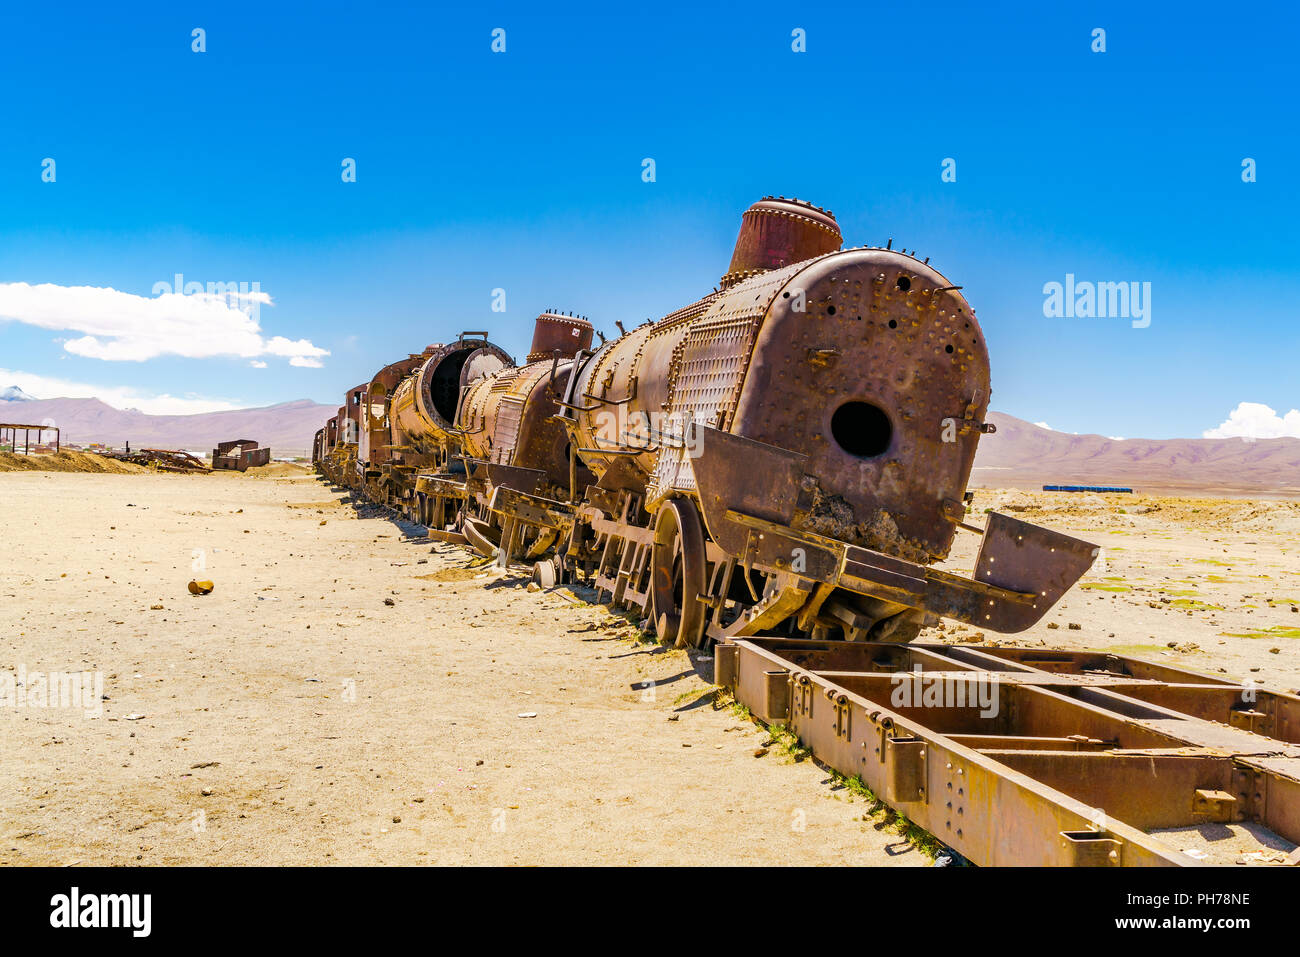 El viejo tren oxidado abandonados Foto de stock